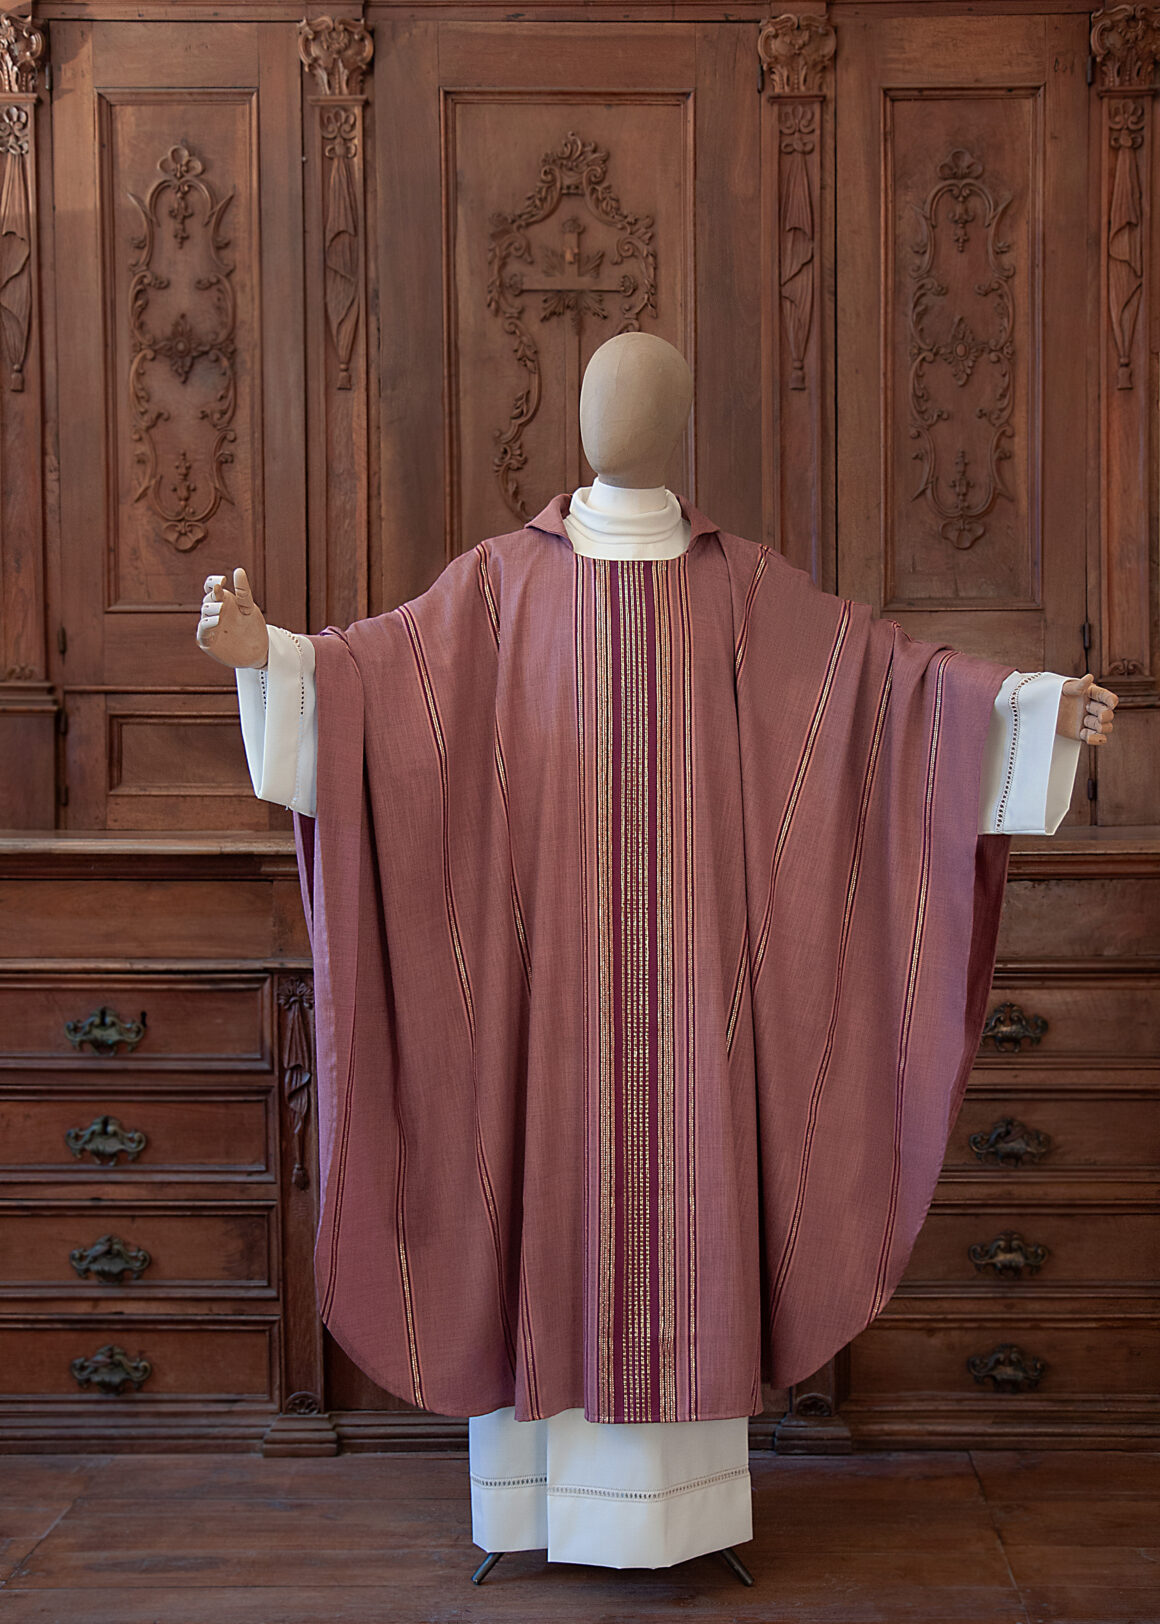 Perchè il sacerdote indossa paramenti rosa la IV Domenica di Quaresima?